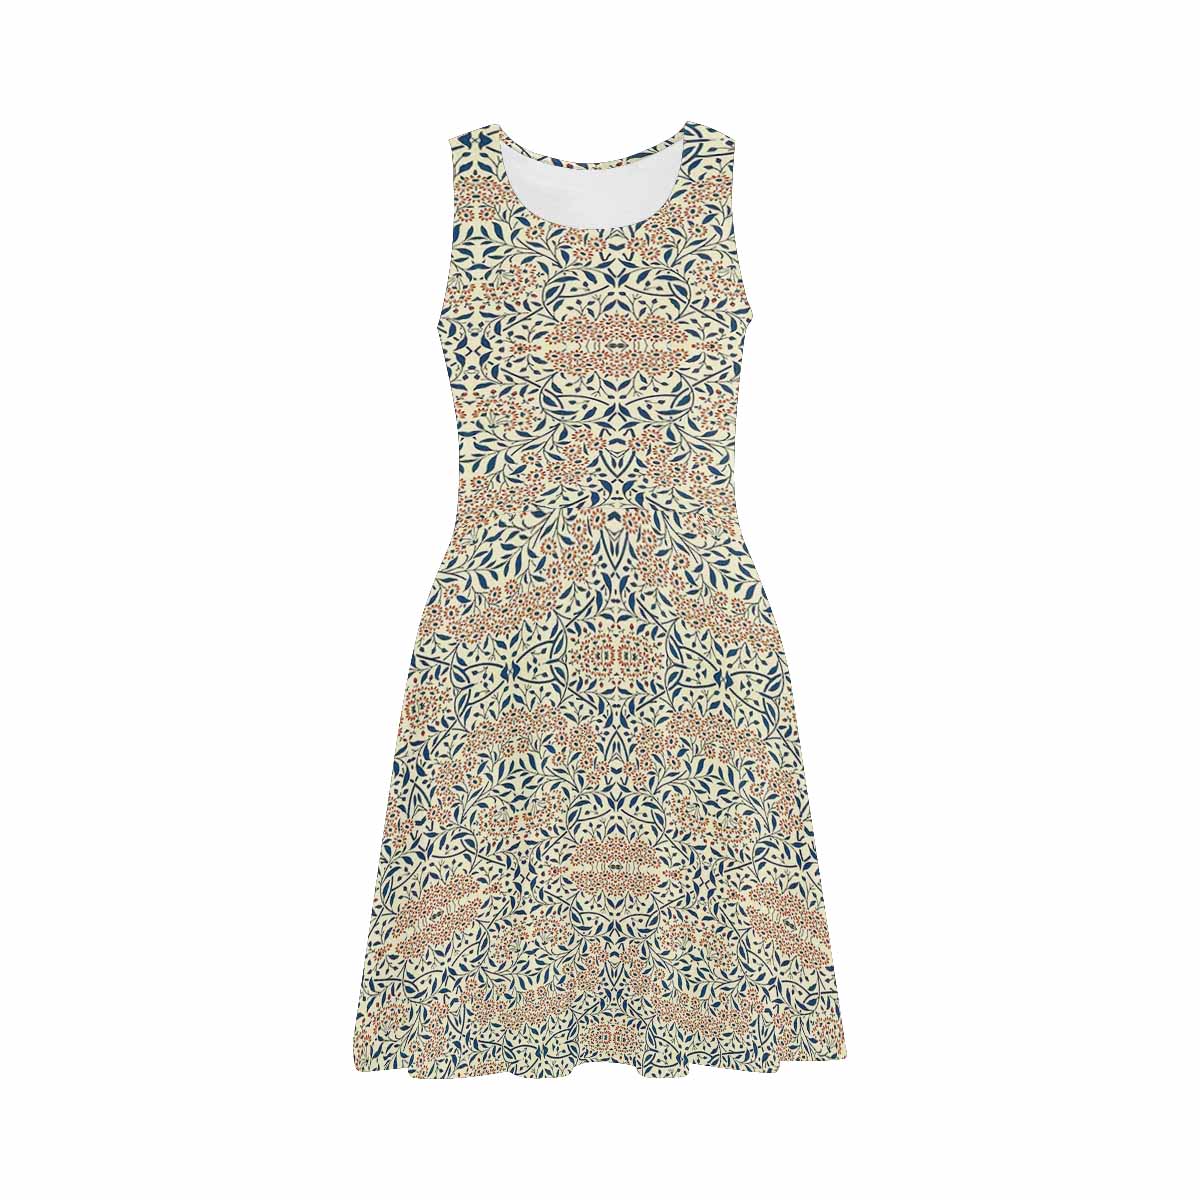 Antique General summer dress, MODEL 09534, design 02